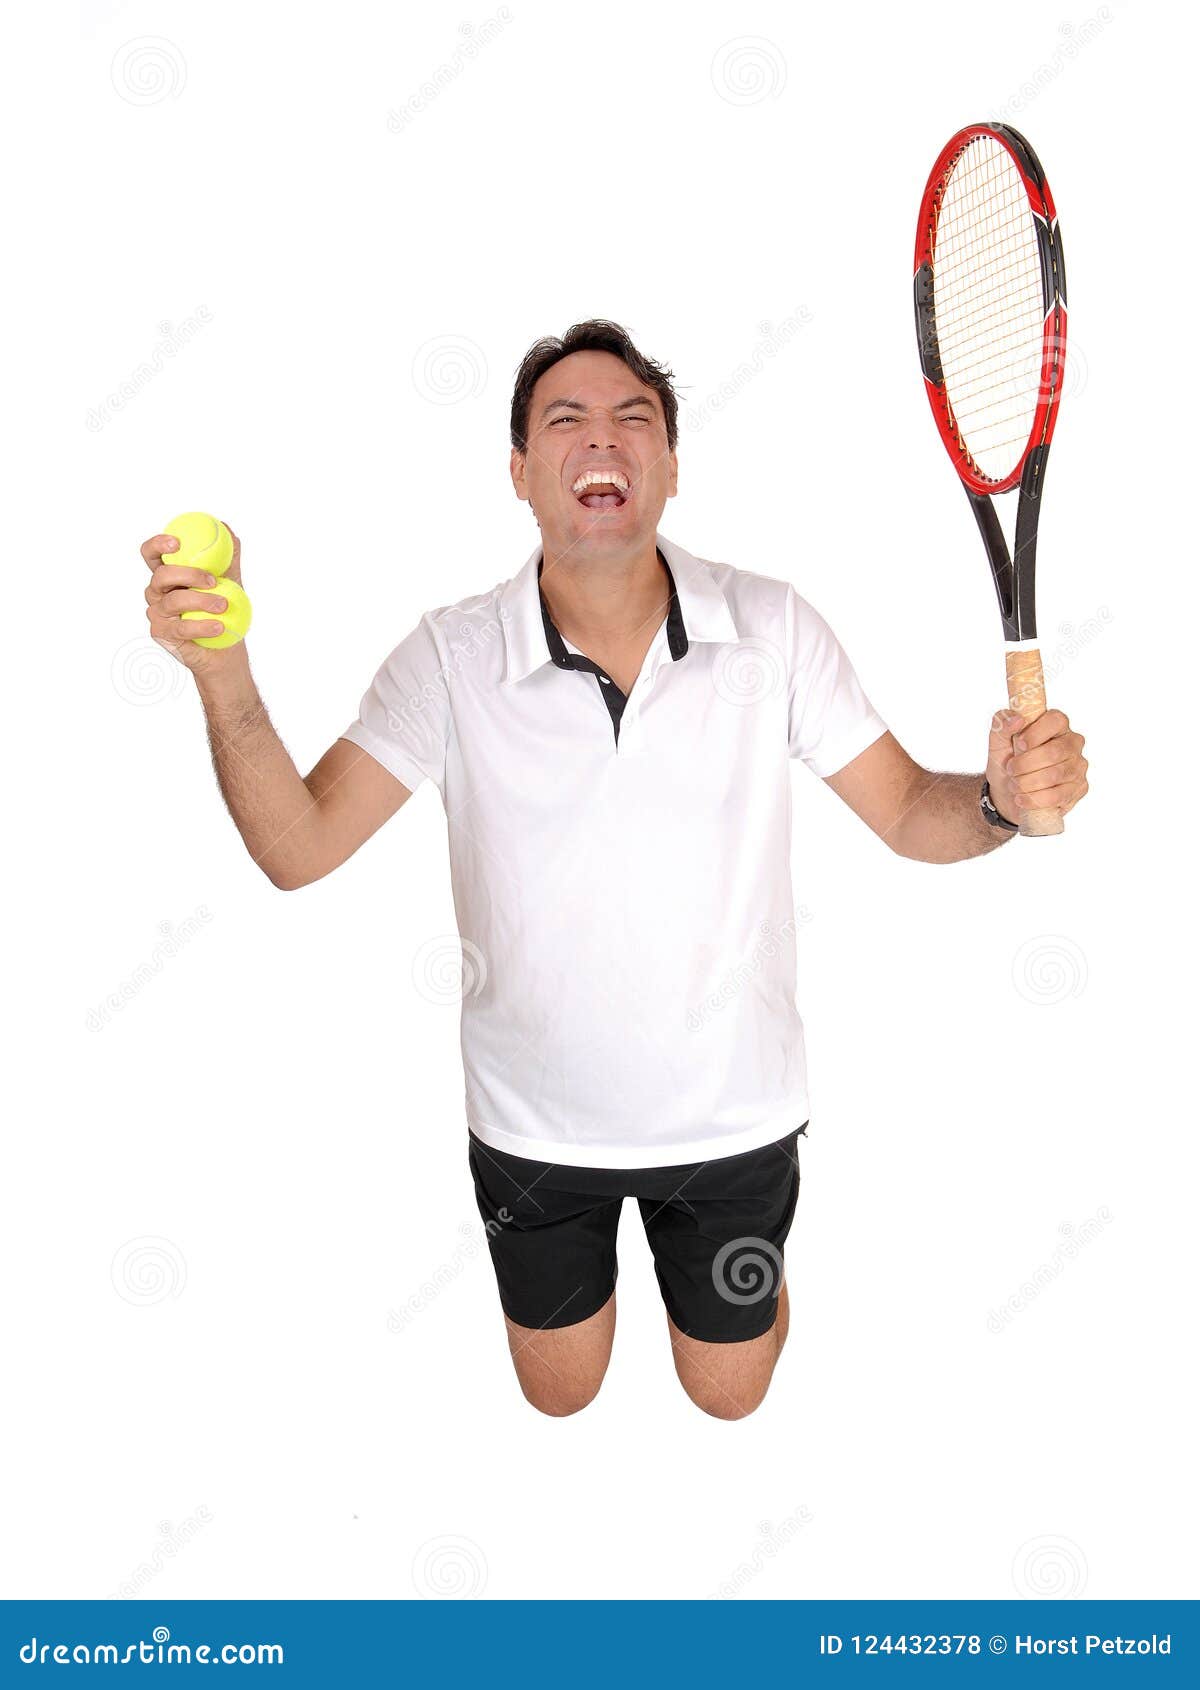 Estudo aponta o motivo de um tenista gritar durante o jogo